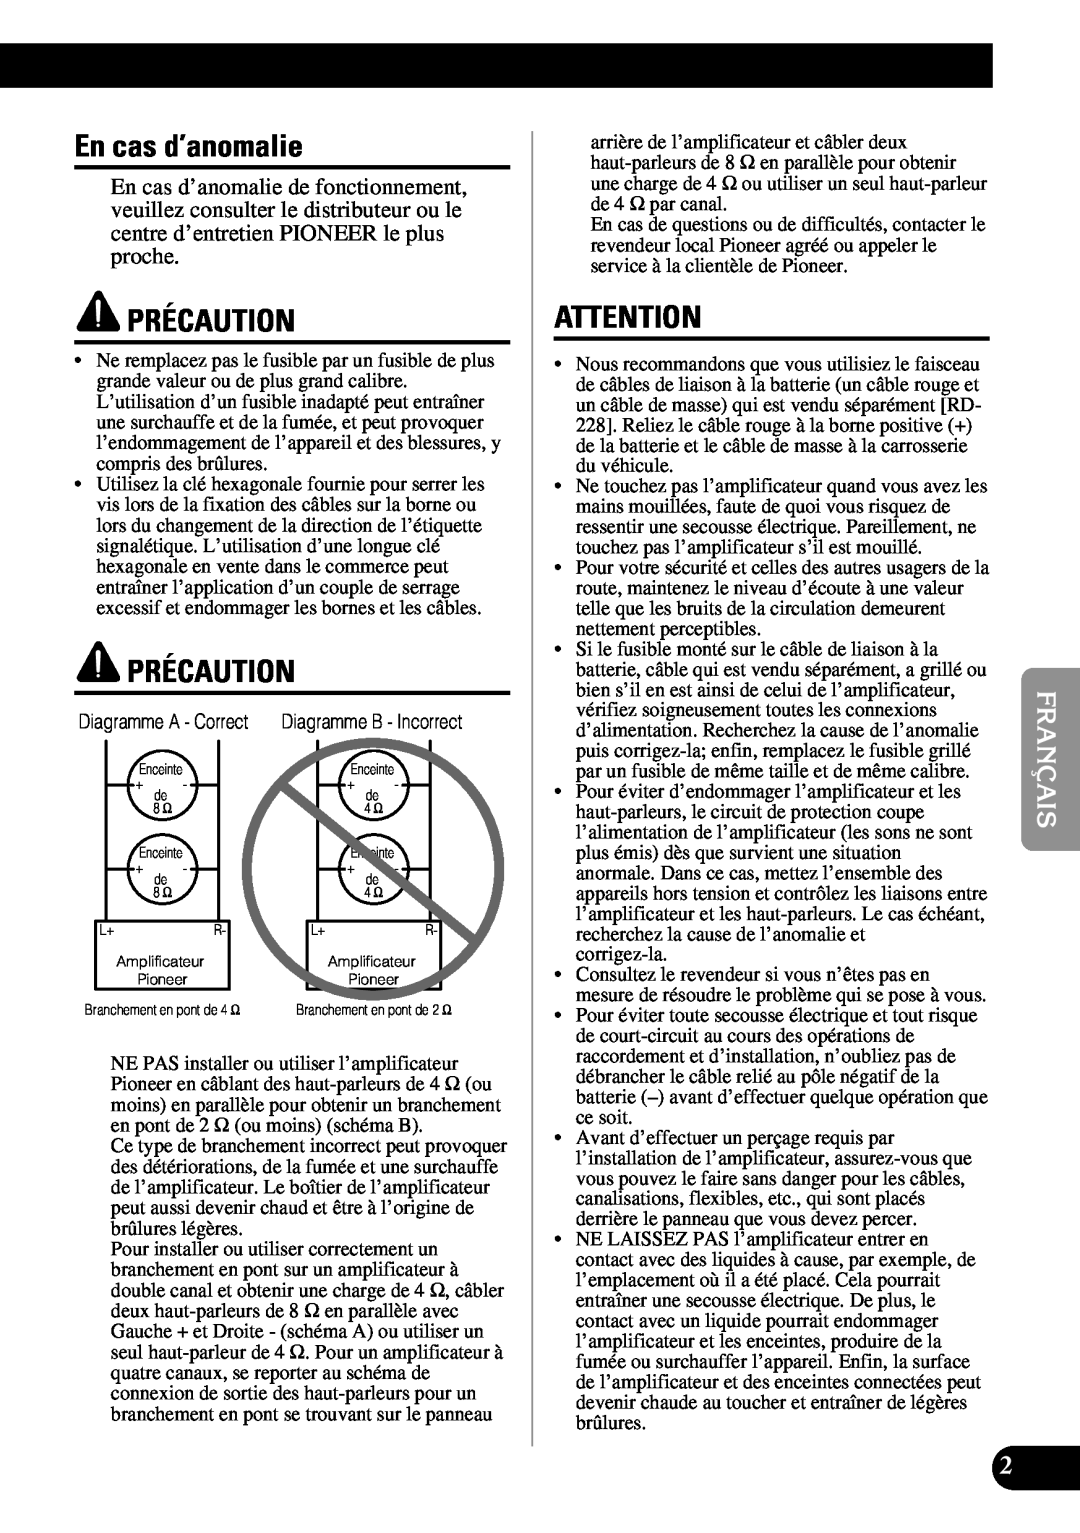 Pioneer PRS-A900 owner manual En cas d’anomalie, Précaution 